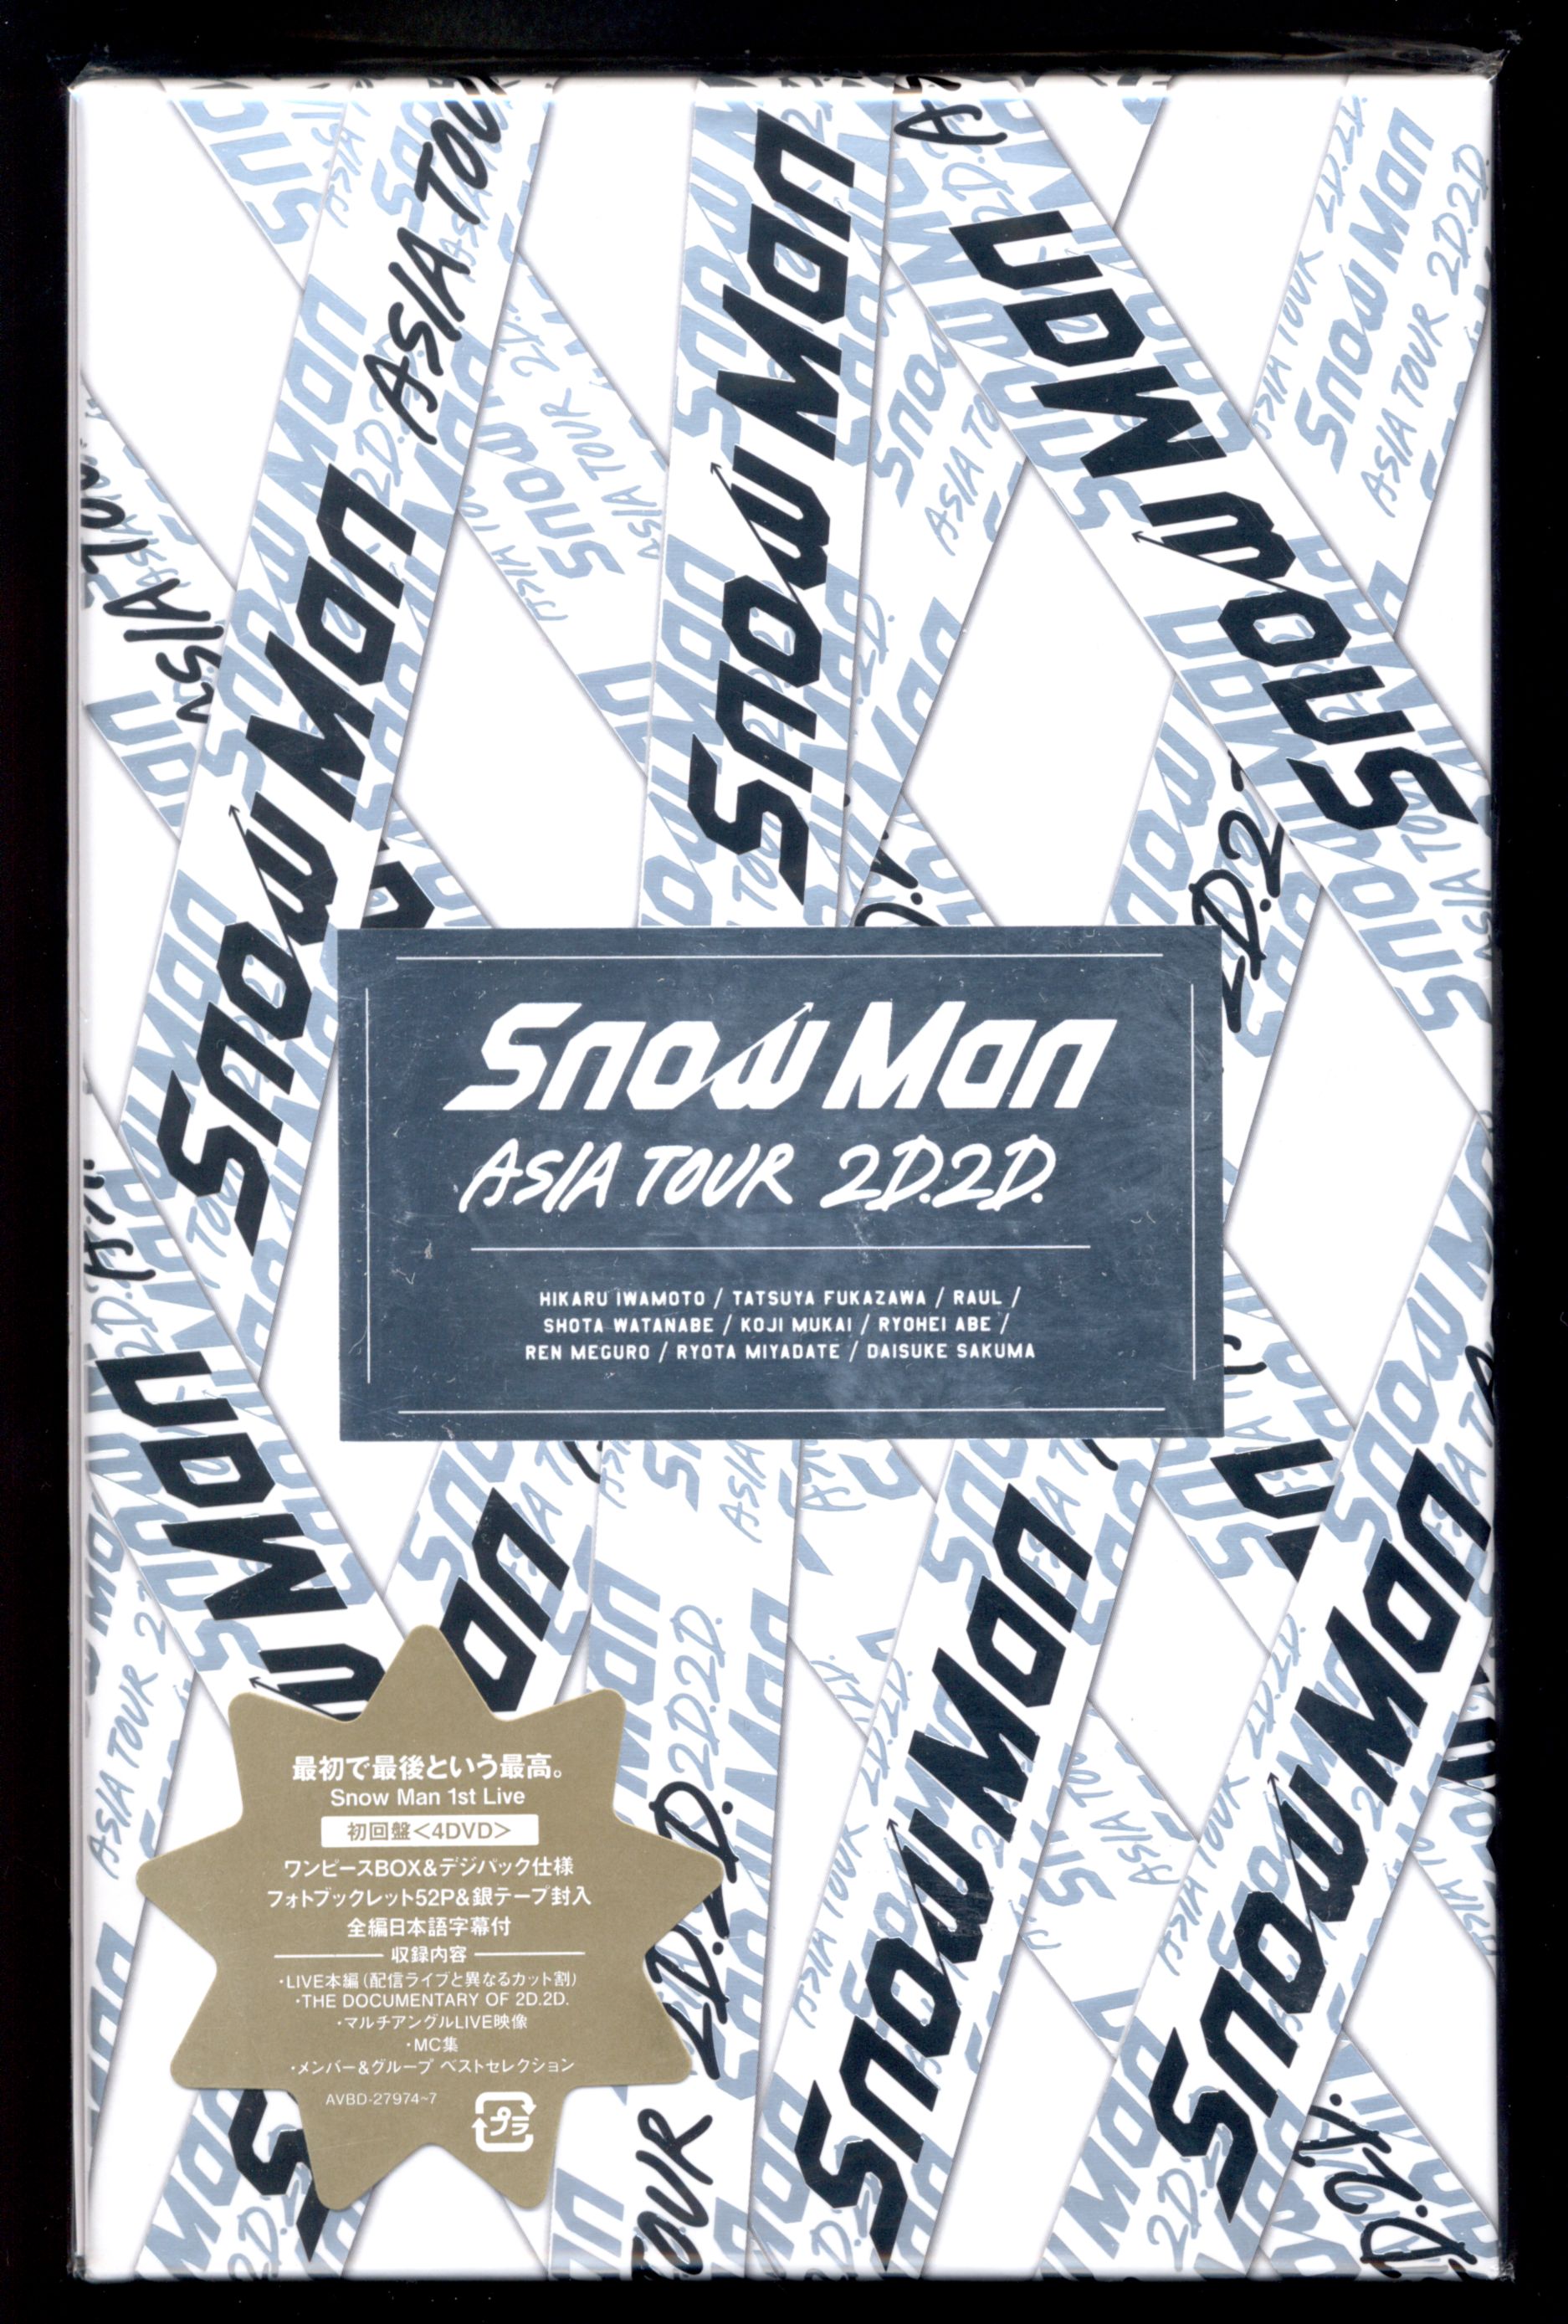 Snow Man 2D.2D. DVD初回限定盤 *4DVD 銀テープ封入/ドキュメント/MC/マルチアングル/ハイライト収録